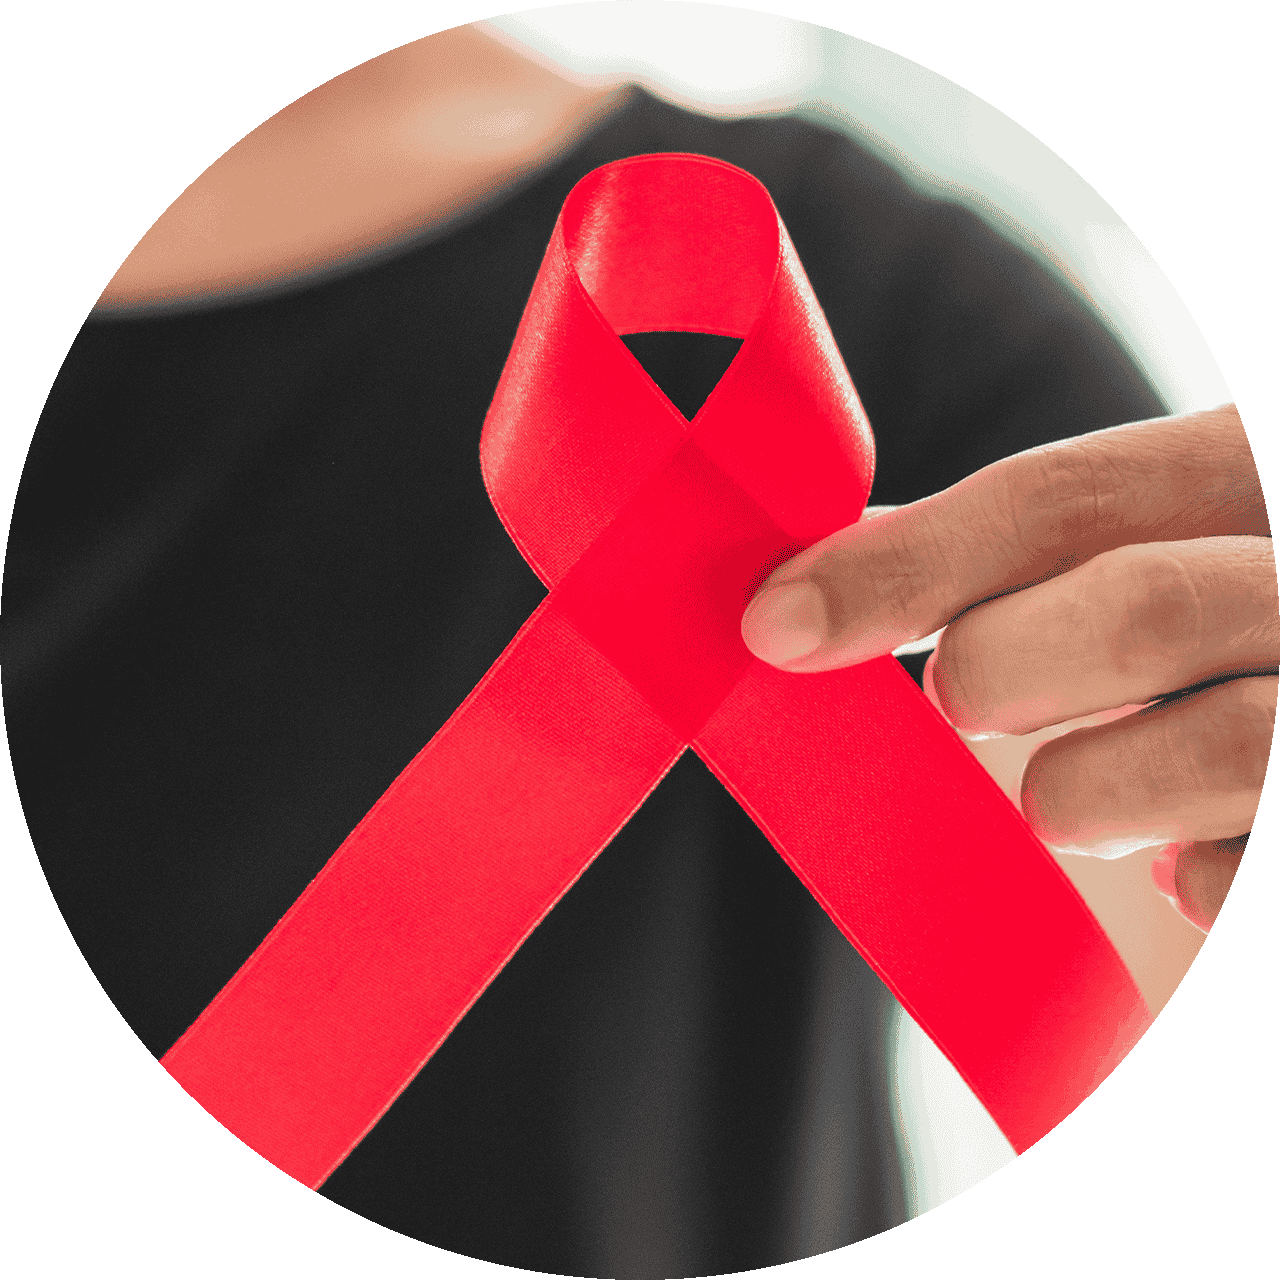 Ein positiver HIV-Test verändert das Leben und wird von den Meisten als tiefer Einschnitt empfunden.